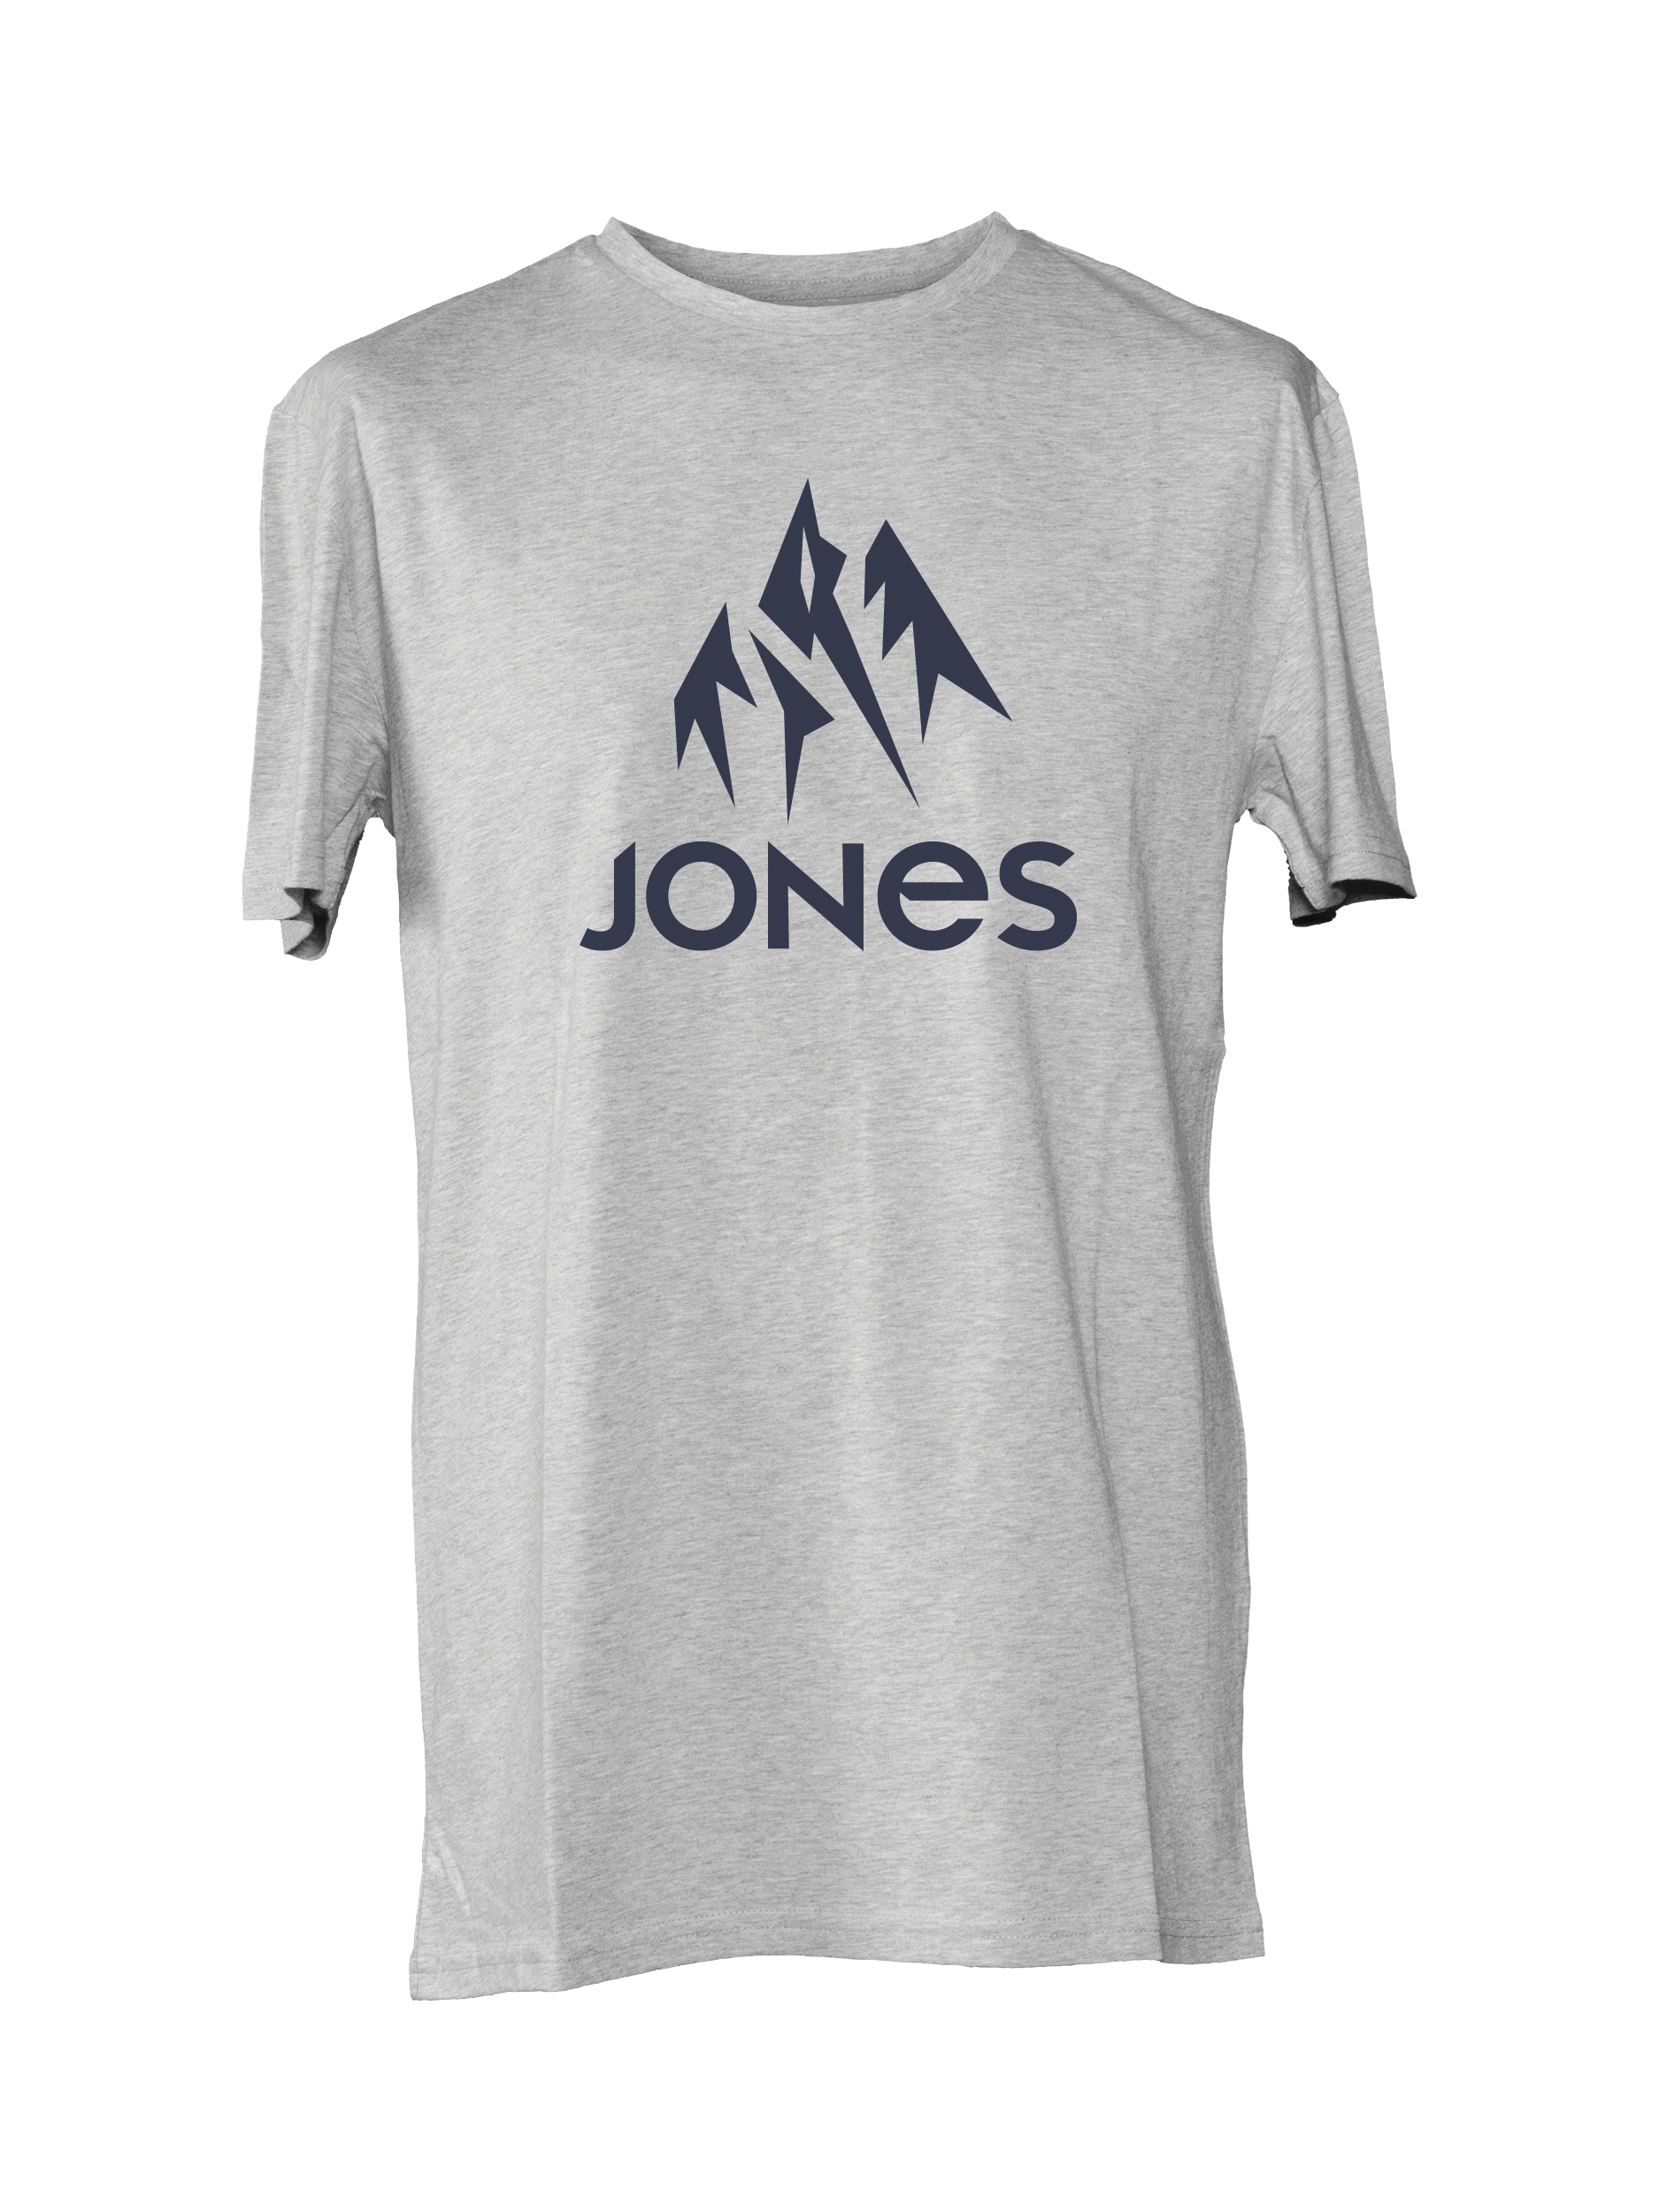 1. Jones Trucker Tee Grey